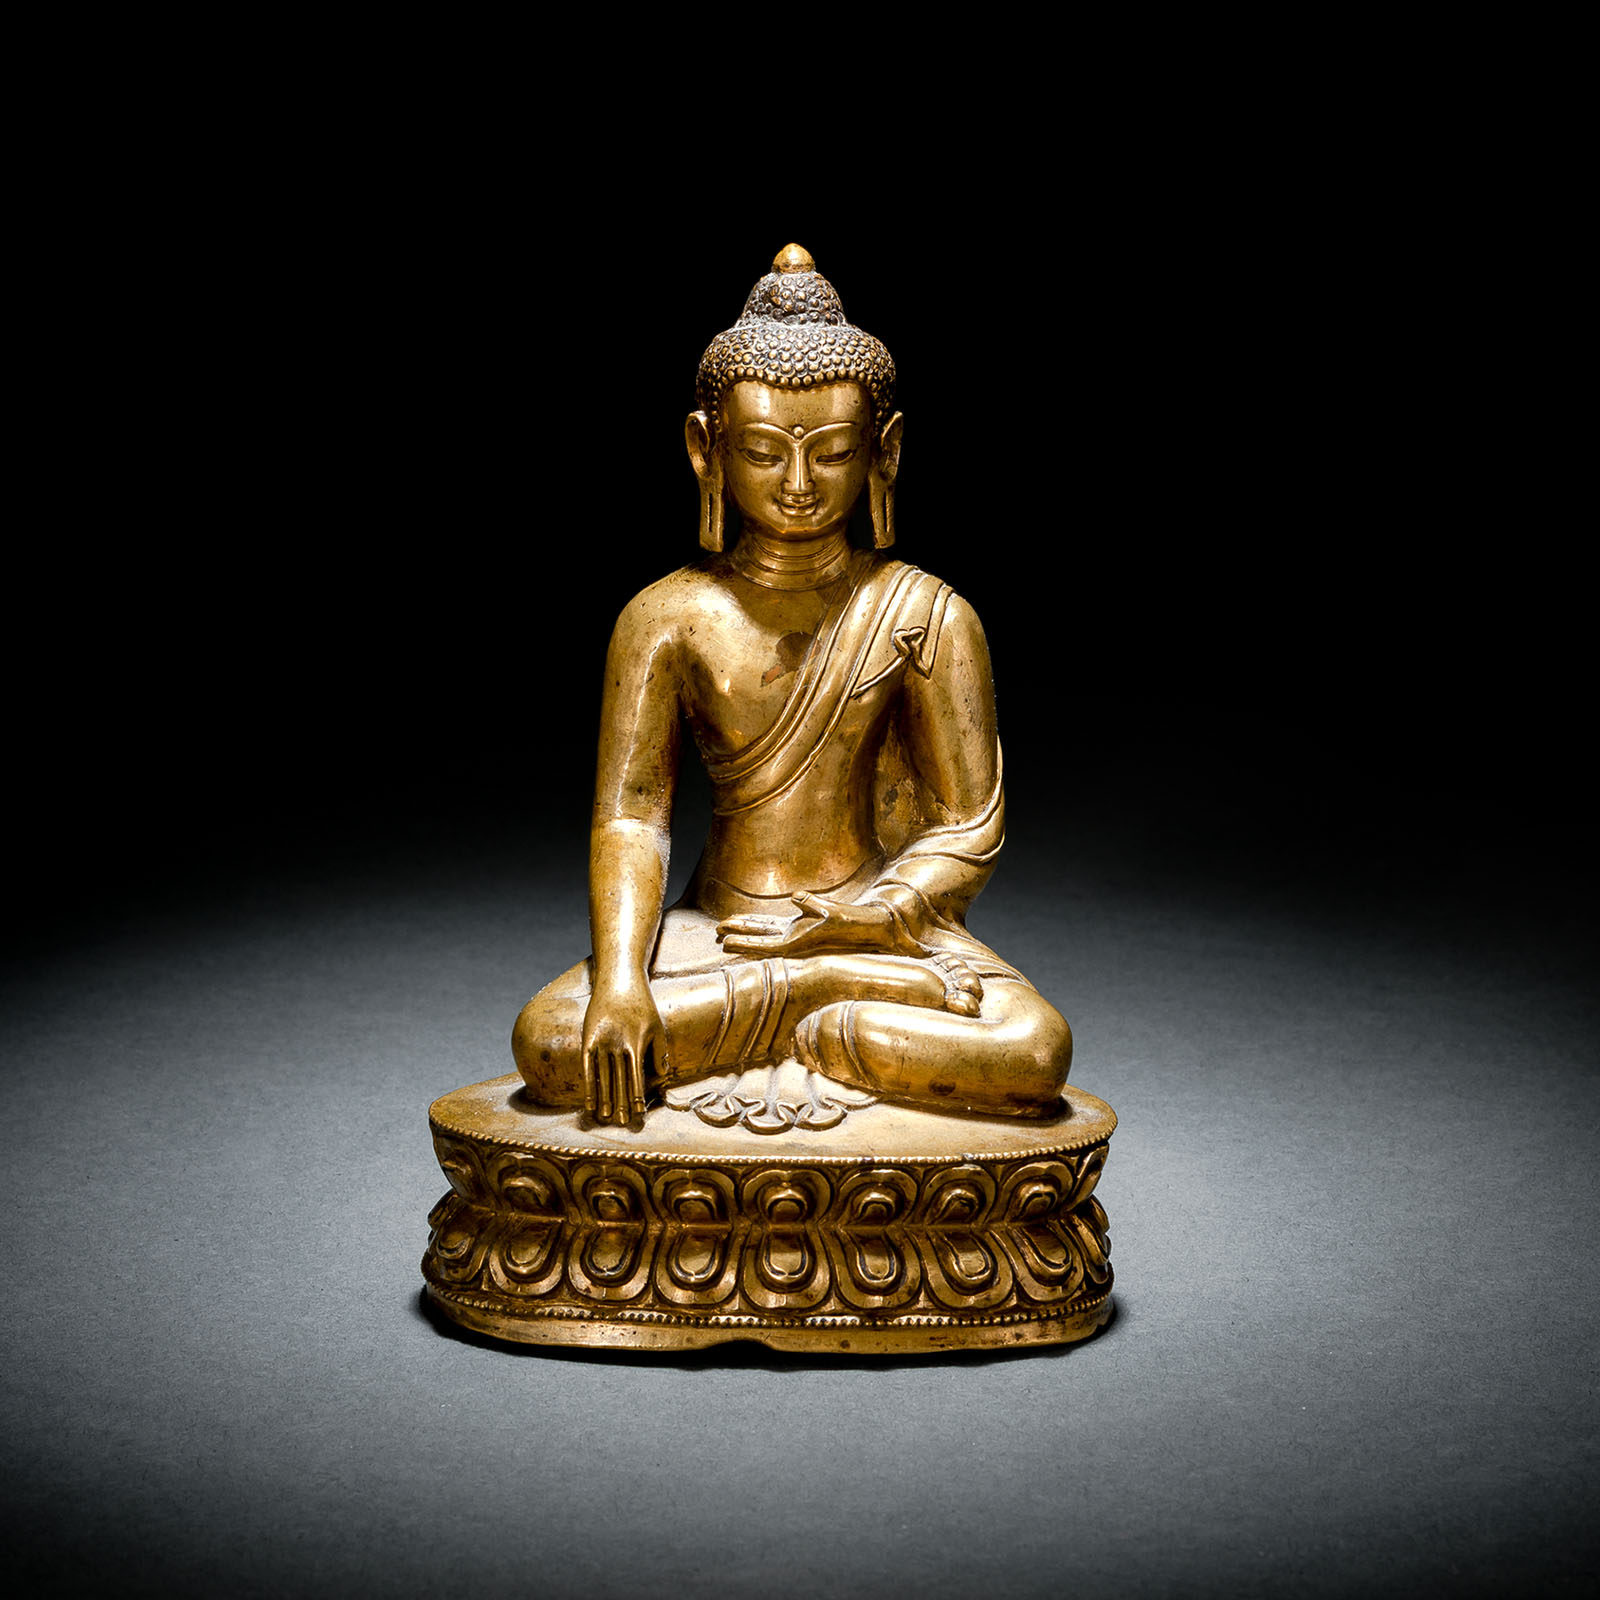 A BRONZE FIGURE OF BUDDHA SHAKYAMUNI